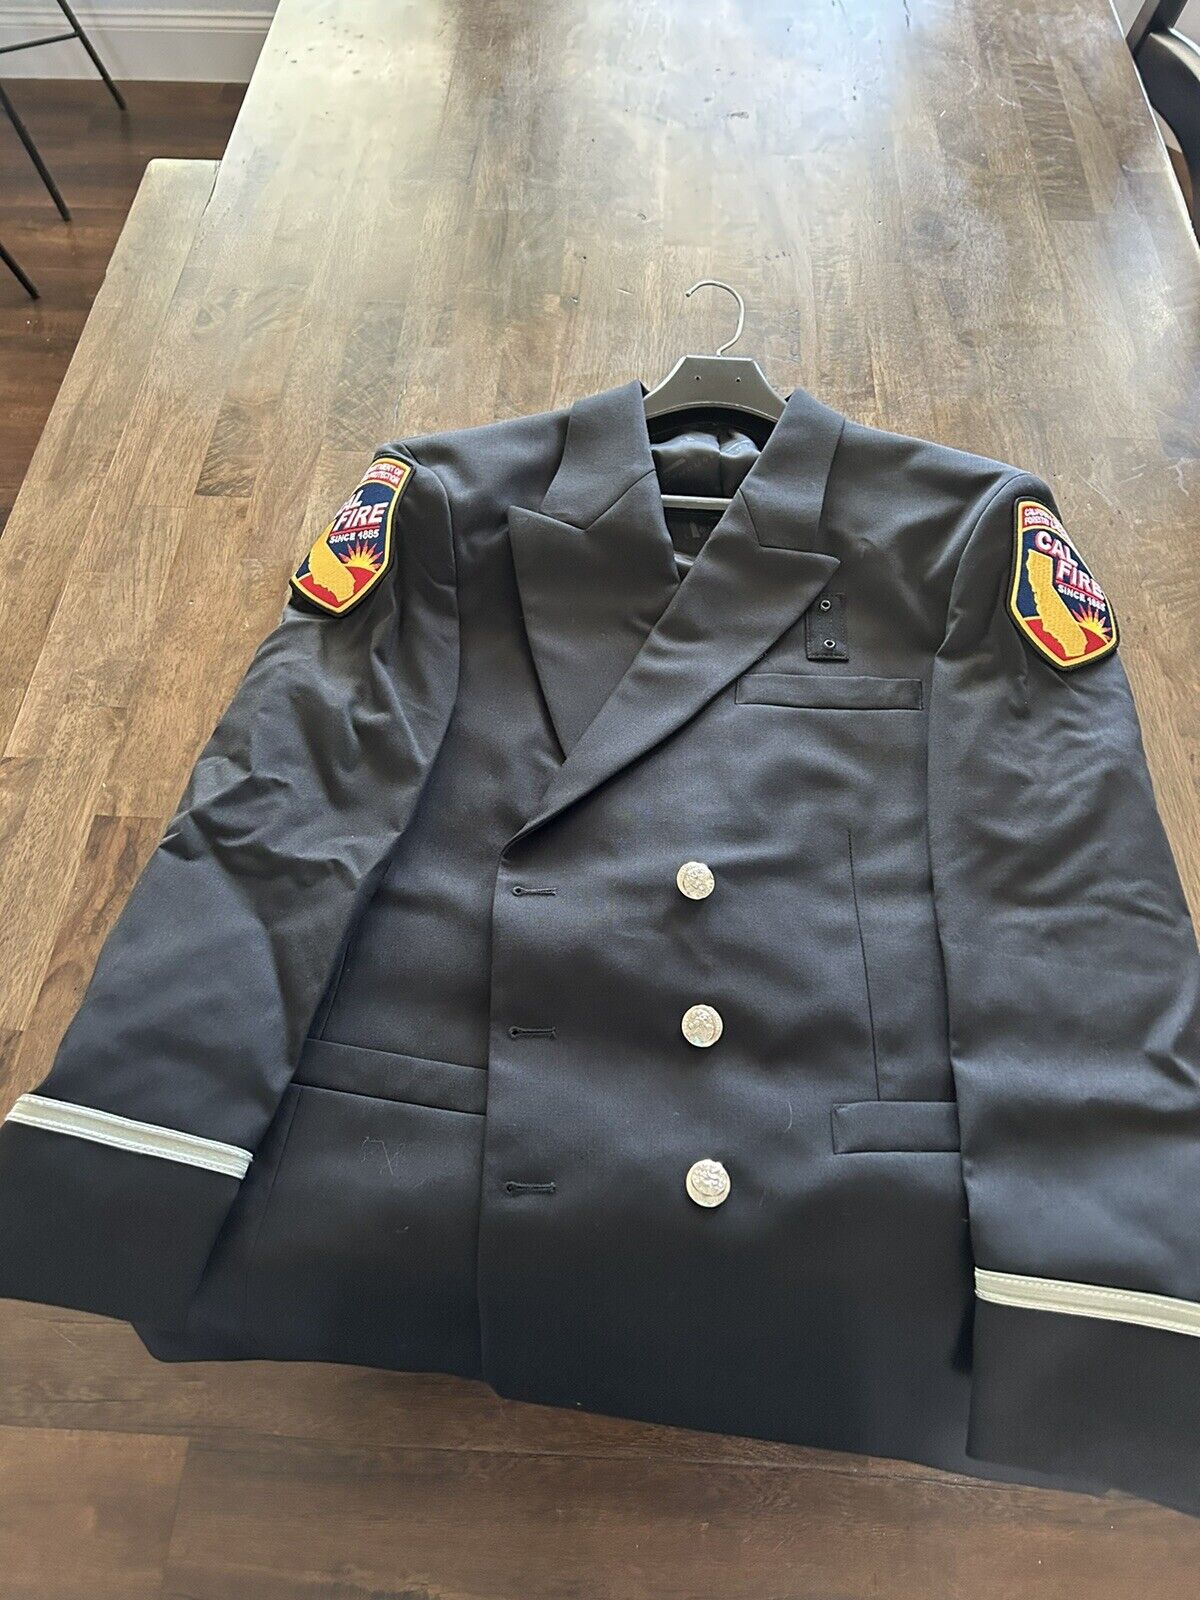 Cal Fire Class A Uniform 